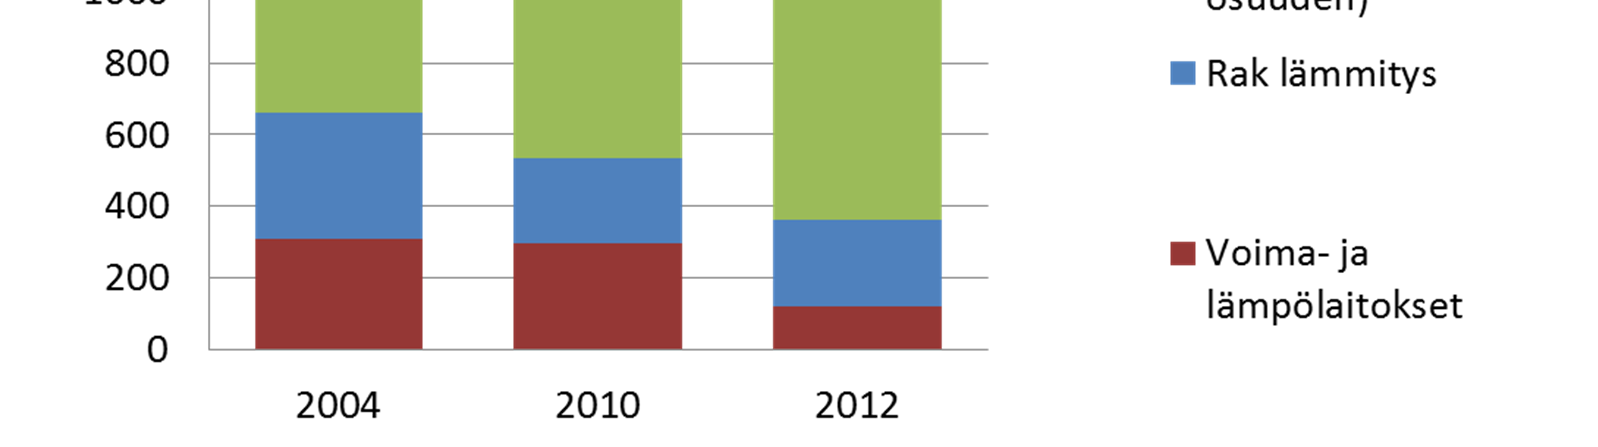 Öljytuotteiden kulutus Öljytuotteiden kulutus Jyväskylässä oli 1280 GWh vuonna 2012 Kulutus laski 14 % vuodesta 2010 Öljyn käyttö vähentyi erityisen